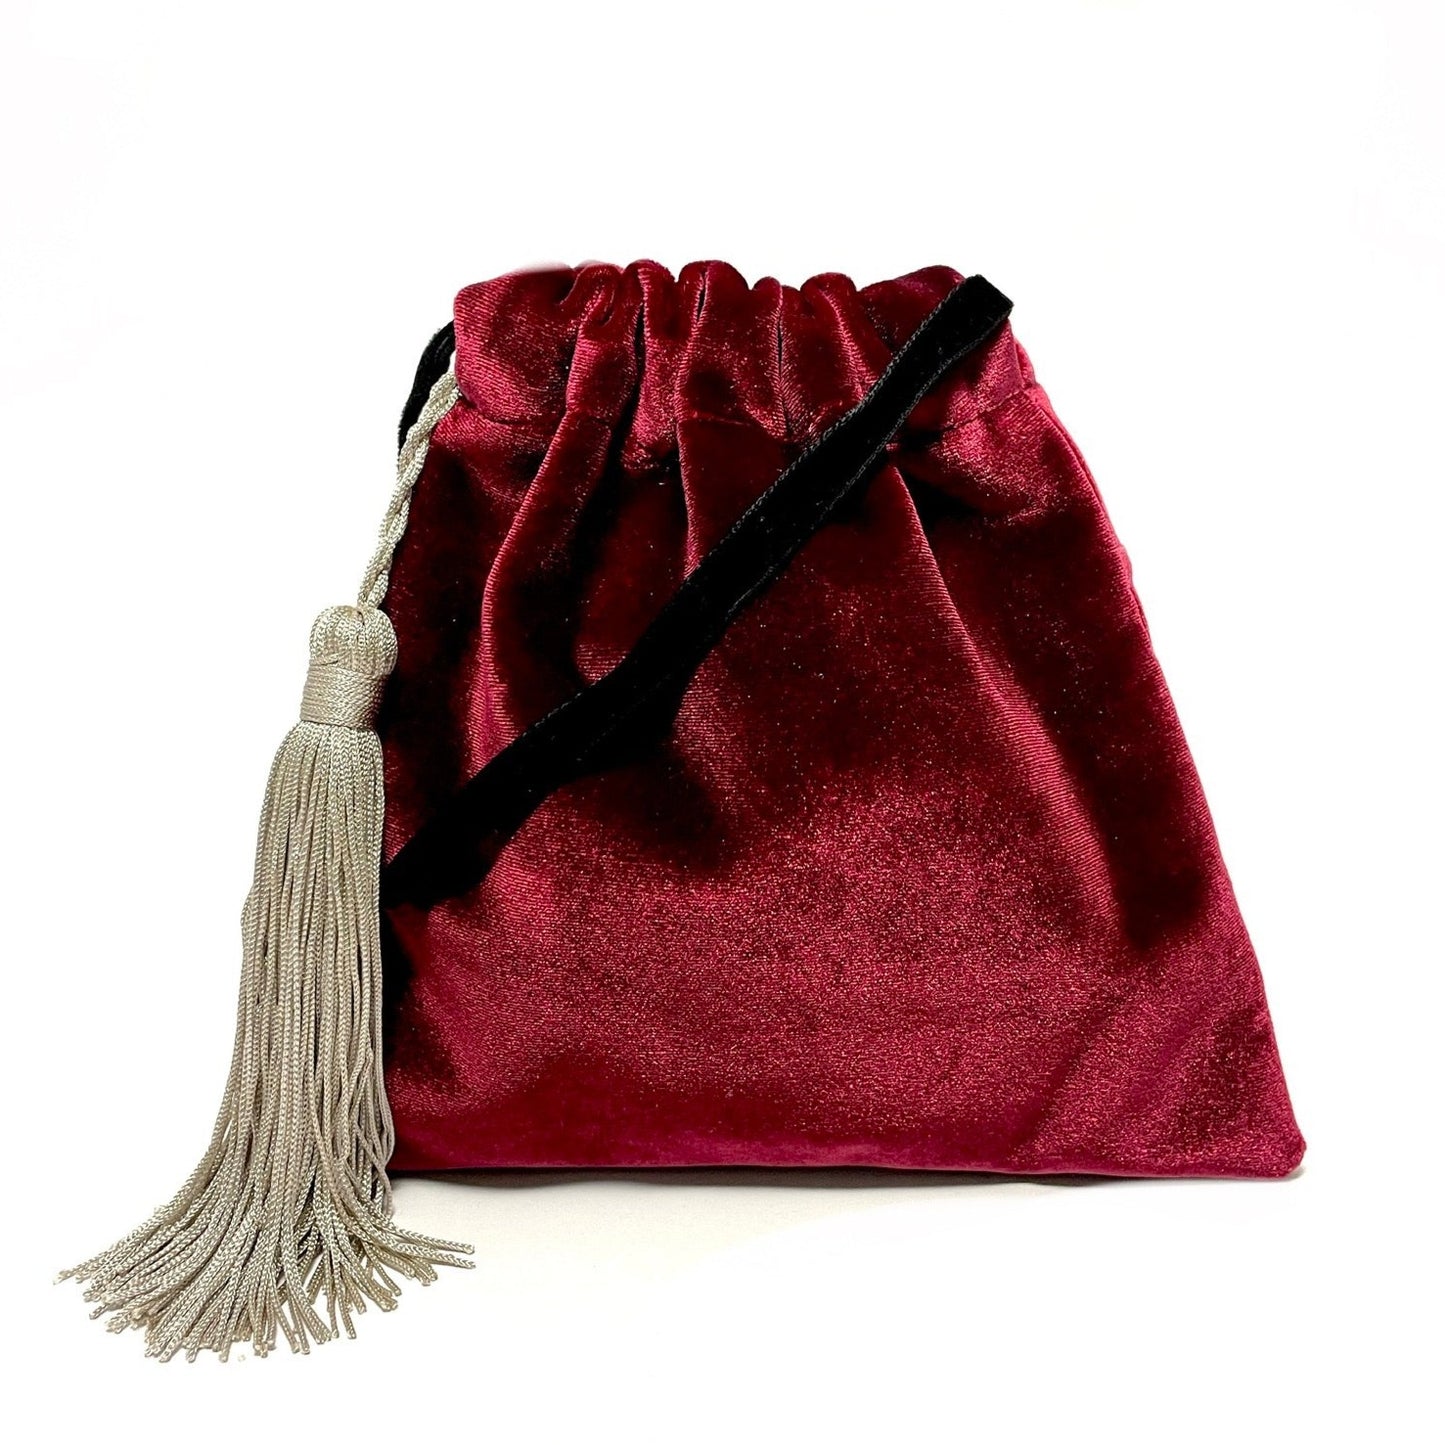 Red velvet little handbag